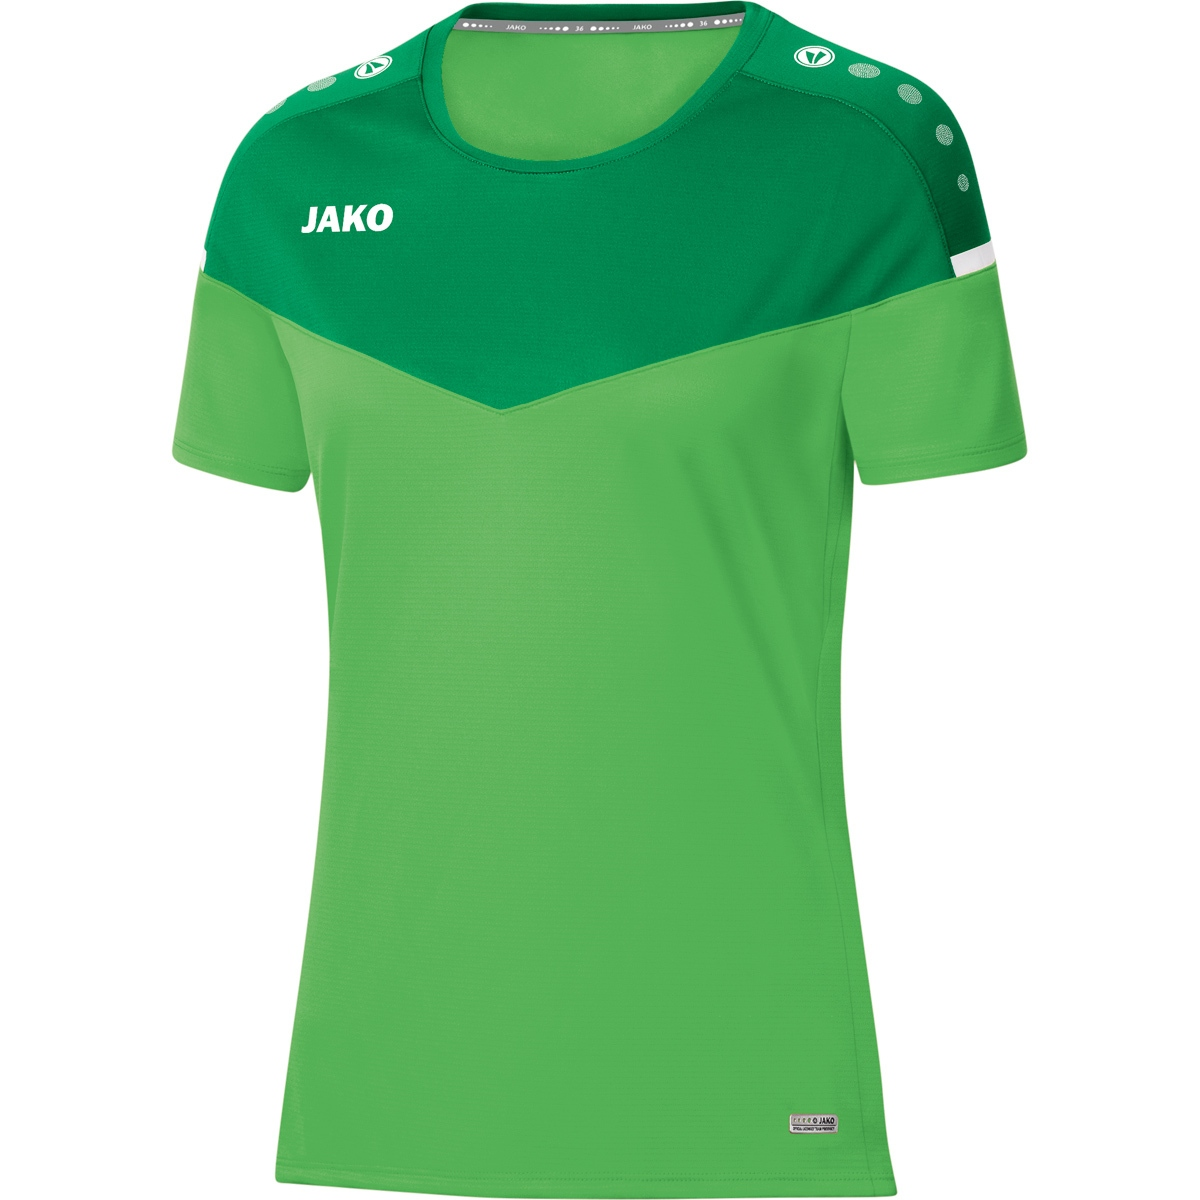 JAKO T-Shirt Champ 2.0 40, Damen, soft green/sportgrün, Gr. 6120